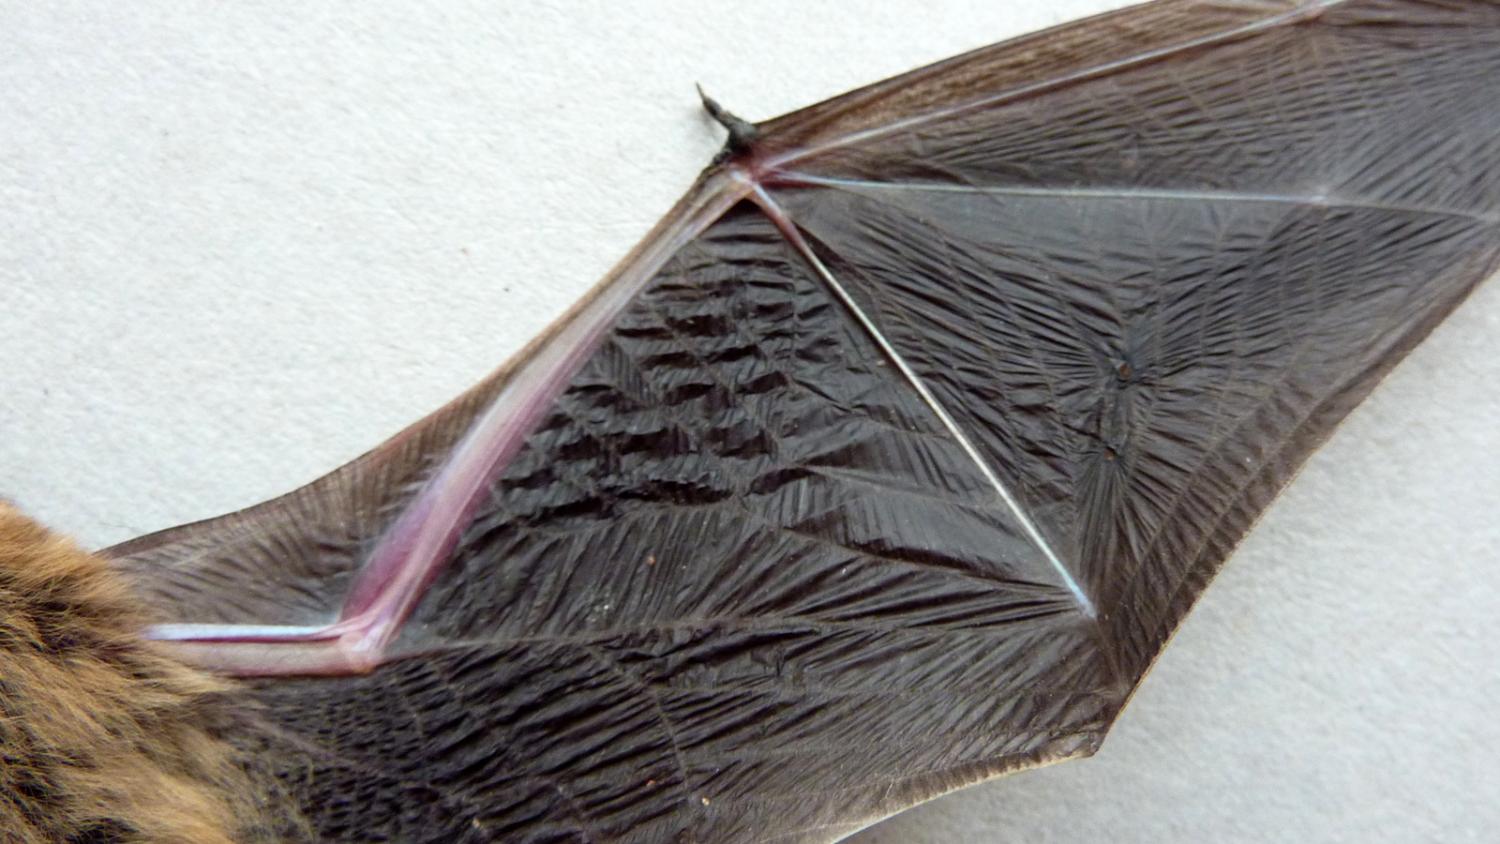 bat wing showing blood vessels